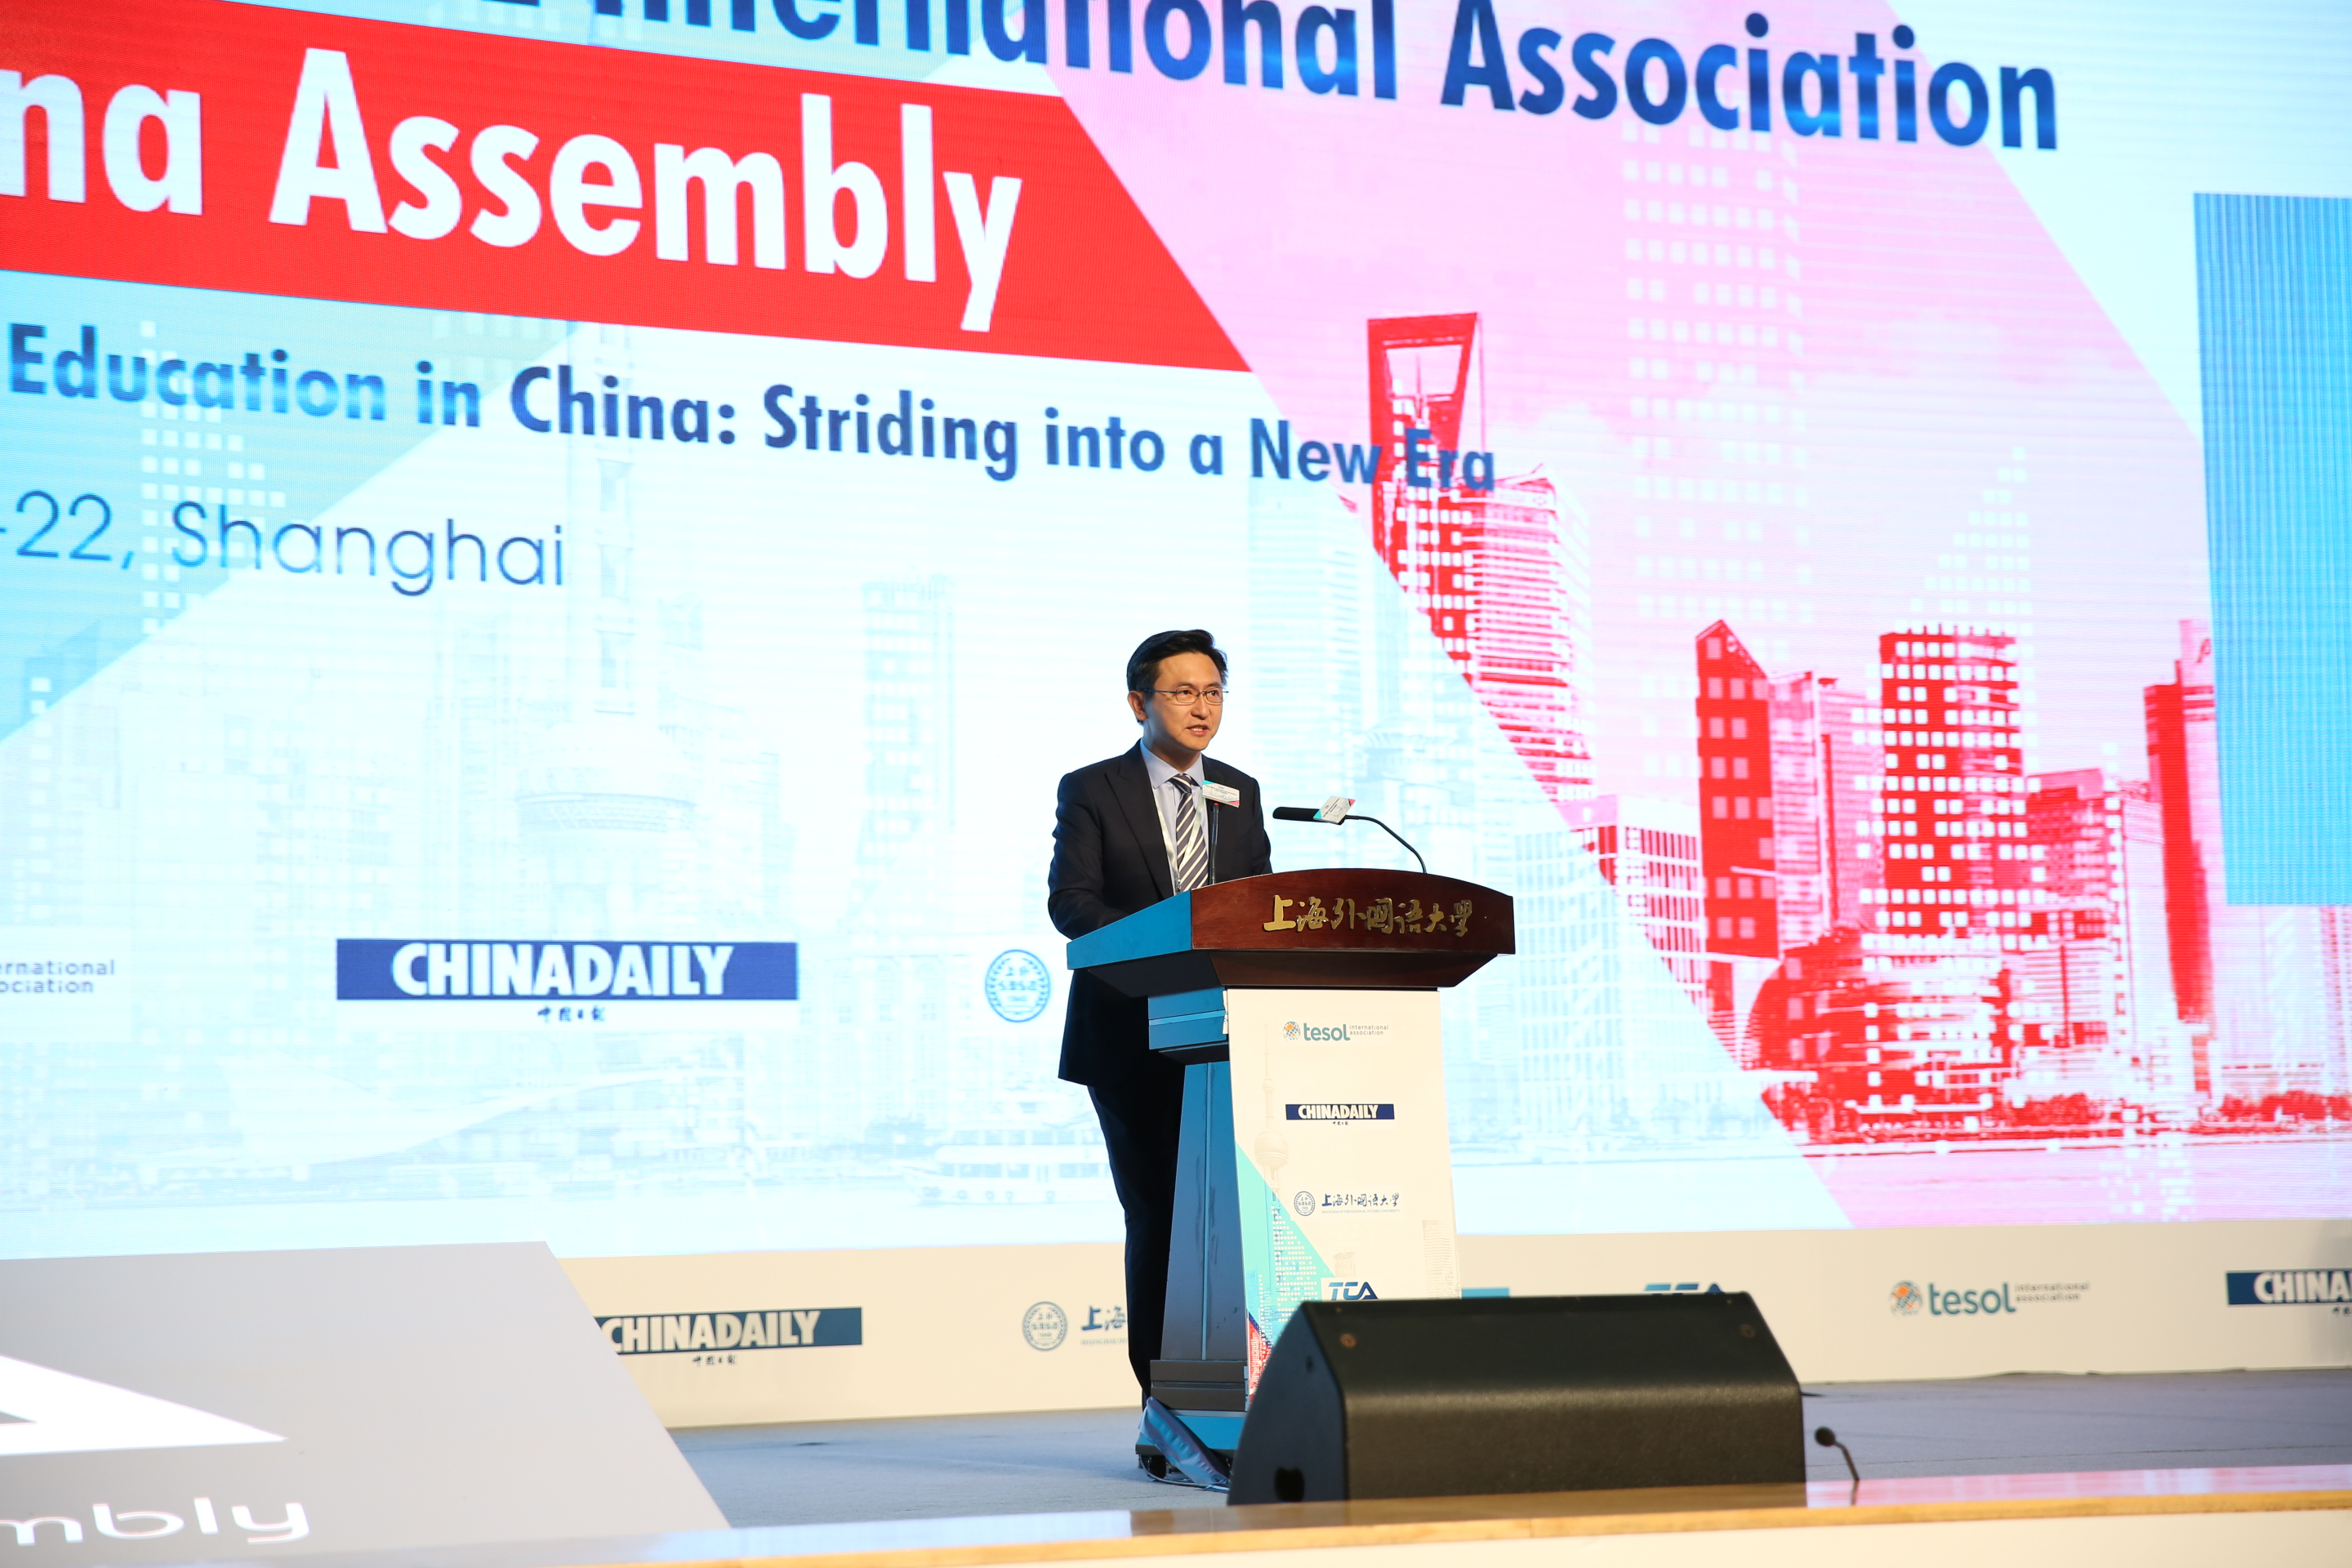 杨正大在2018TESOL中国大会开幕式发表演讲

